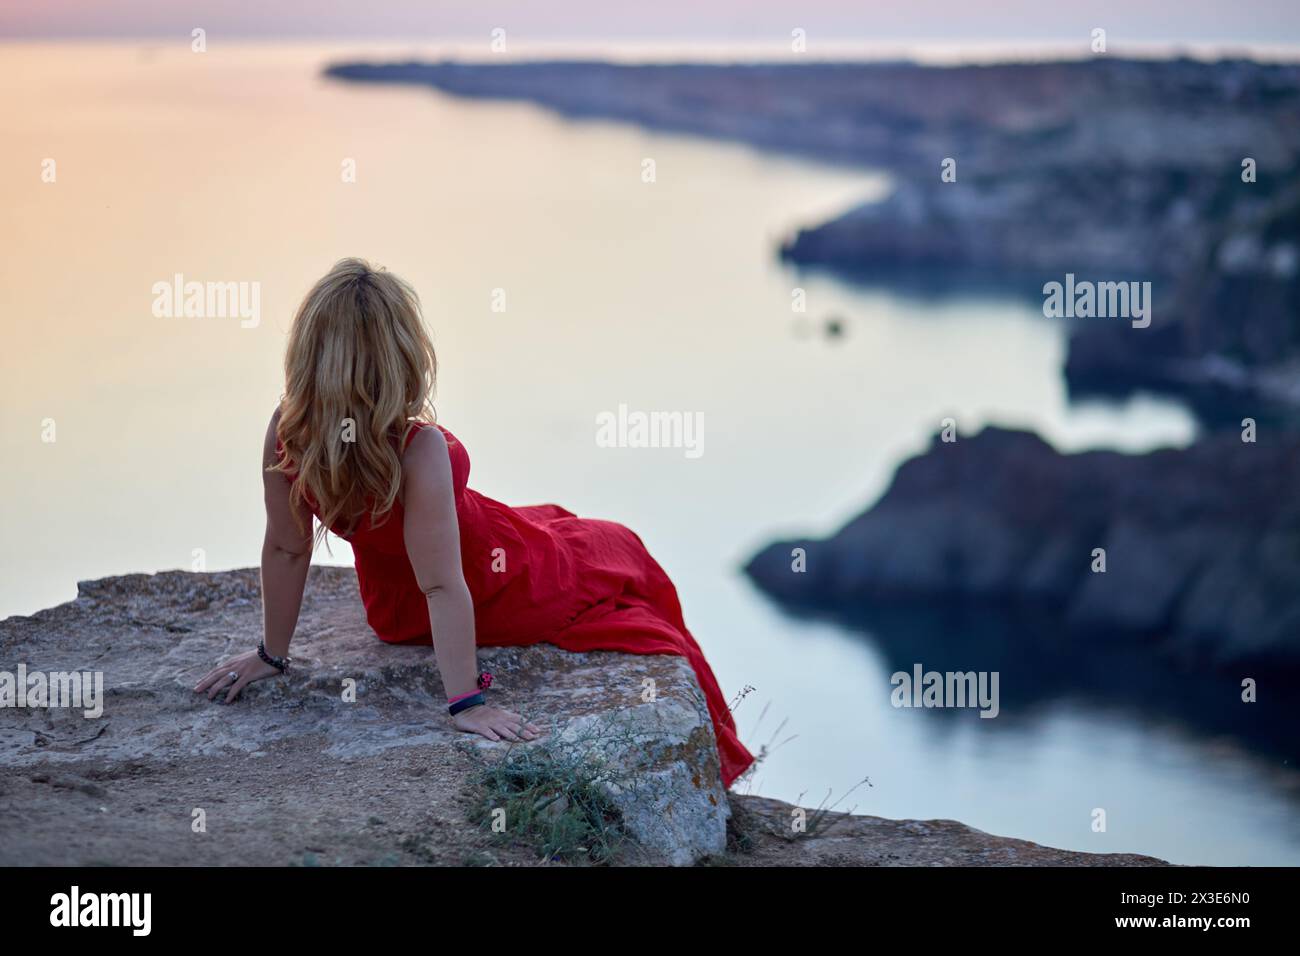 Femme en robe rouge est assis sur le bord de la falaise de pierre penchée en arrière et regardant le bord de mer, vue arrière. Banque D'Images